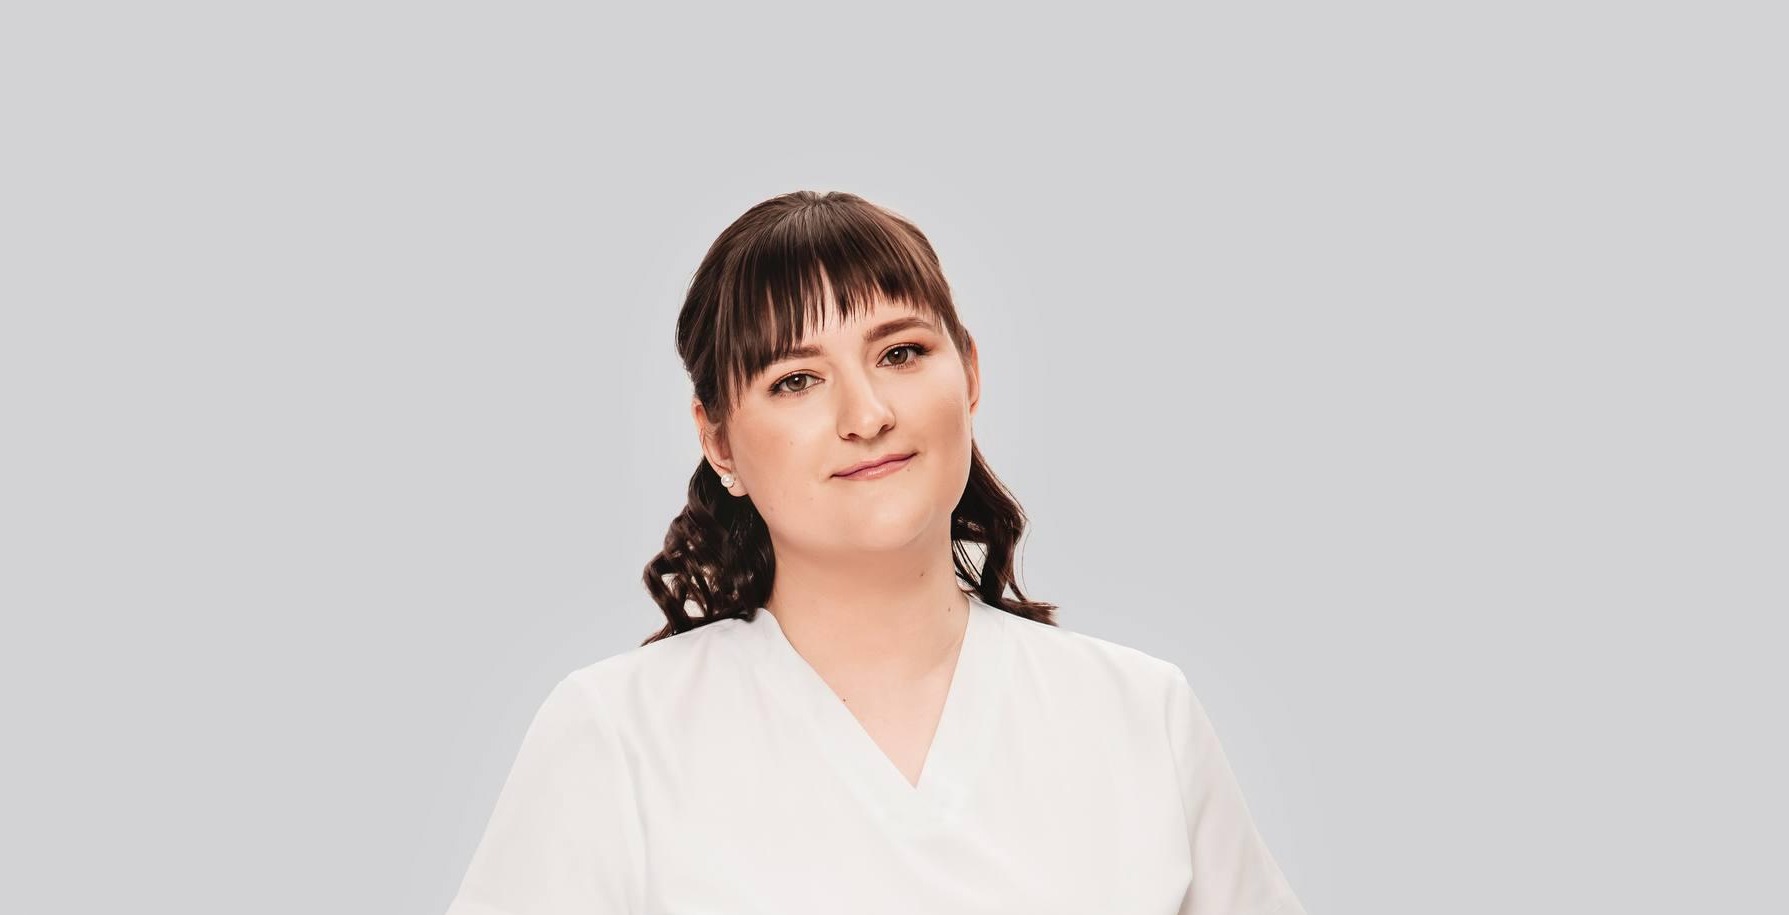 Cтаршая медсестра Татьяна Диченкова получила квалификацию медсестры по физиотерапии